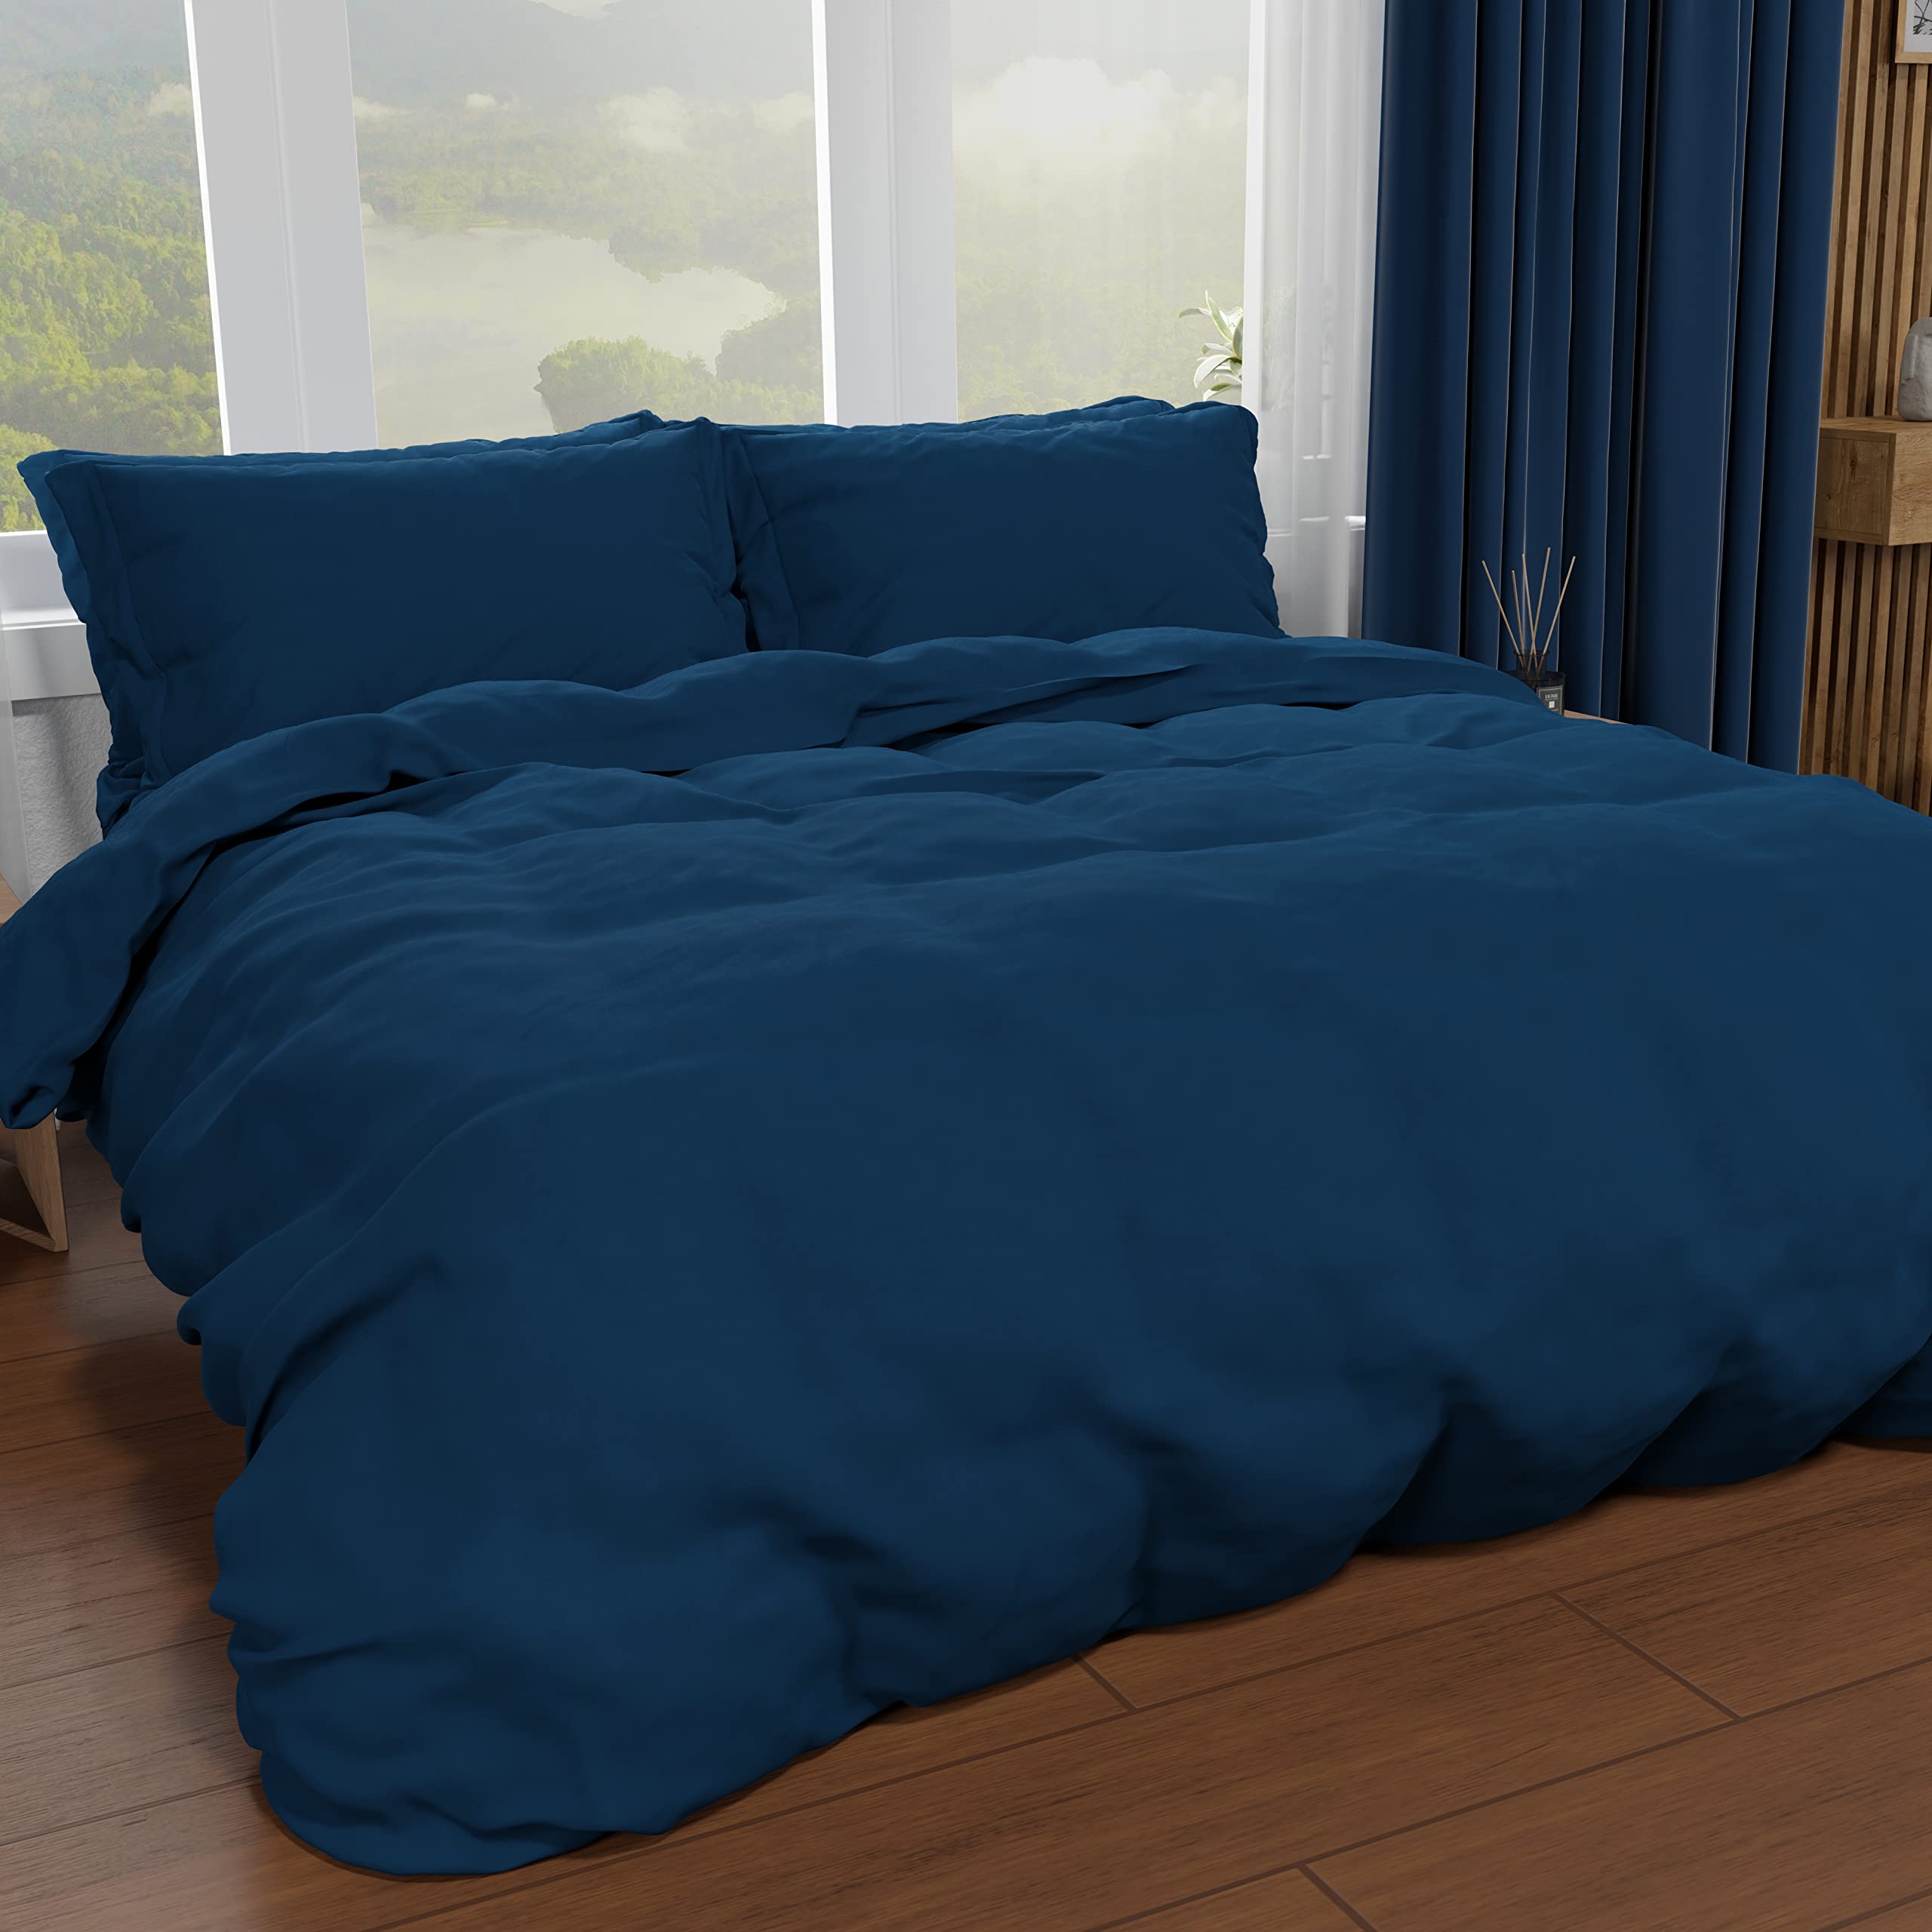 PETTI Artigiani Italiani - Bettbezug für französisches Bett, Bettbezug und Kissenbezüge aus Mikrofaser, einfarbig hellblau, 100% Made in Italy